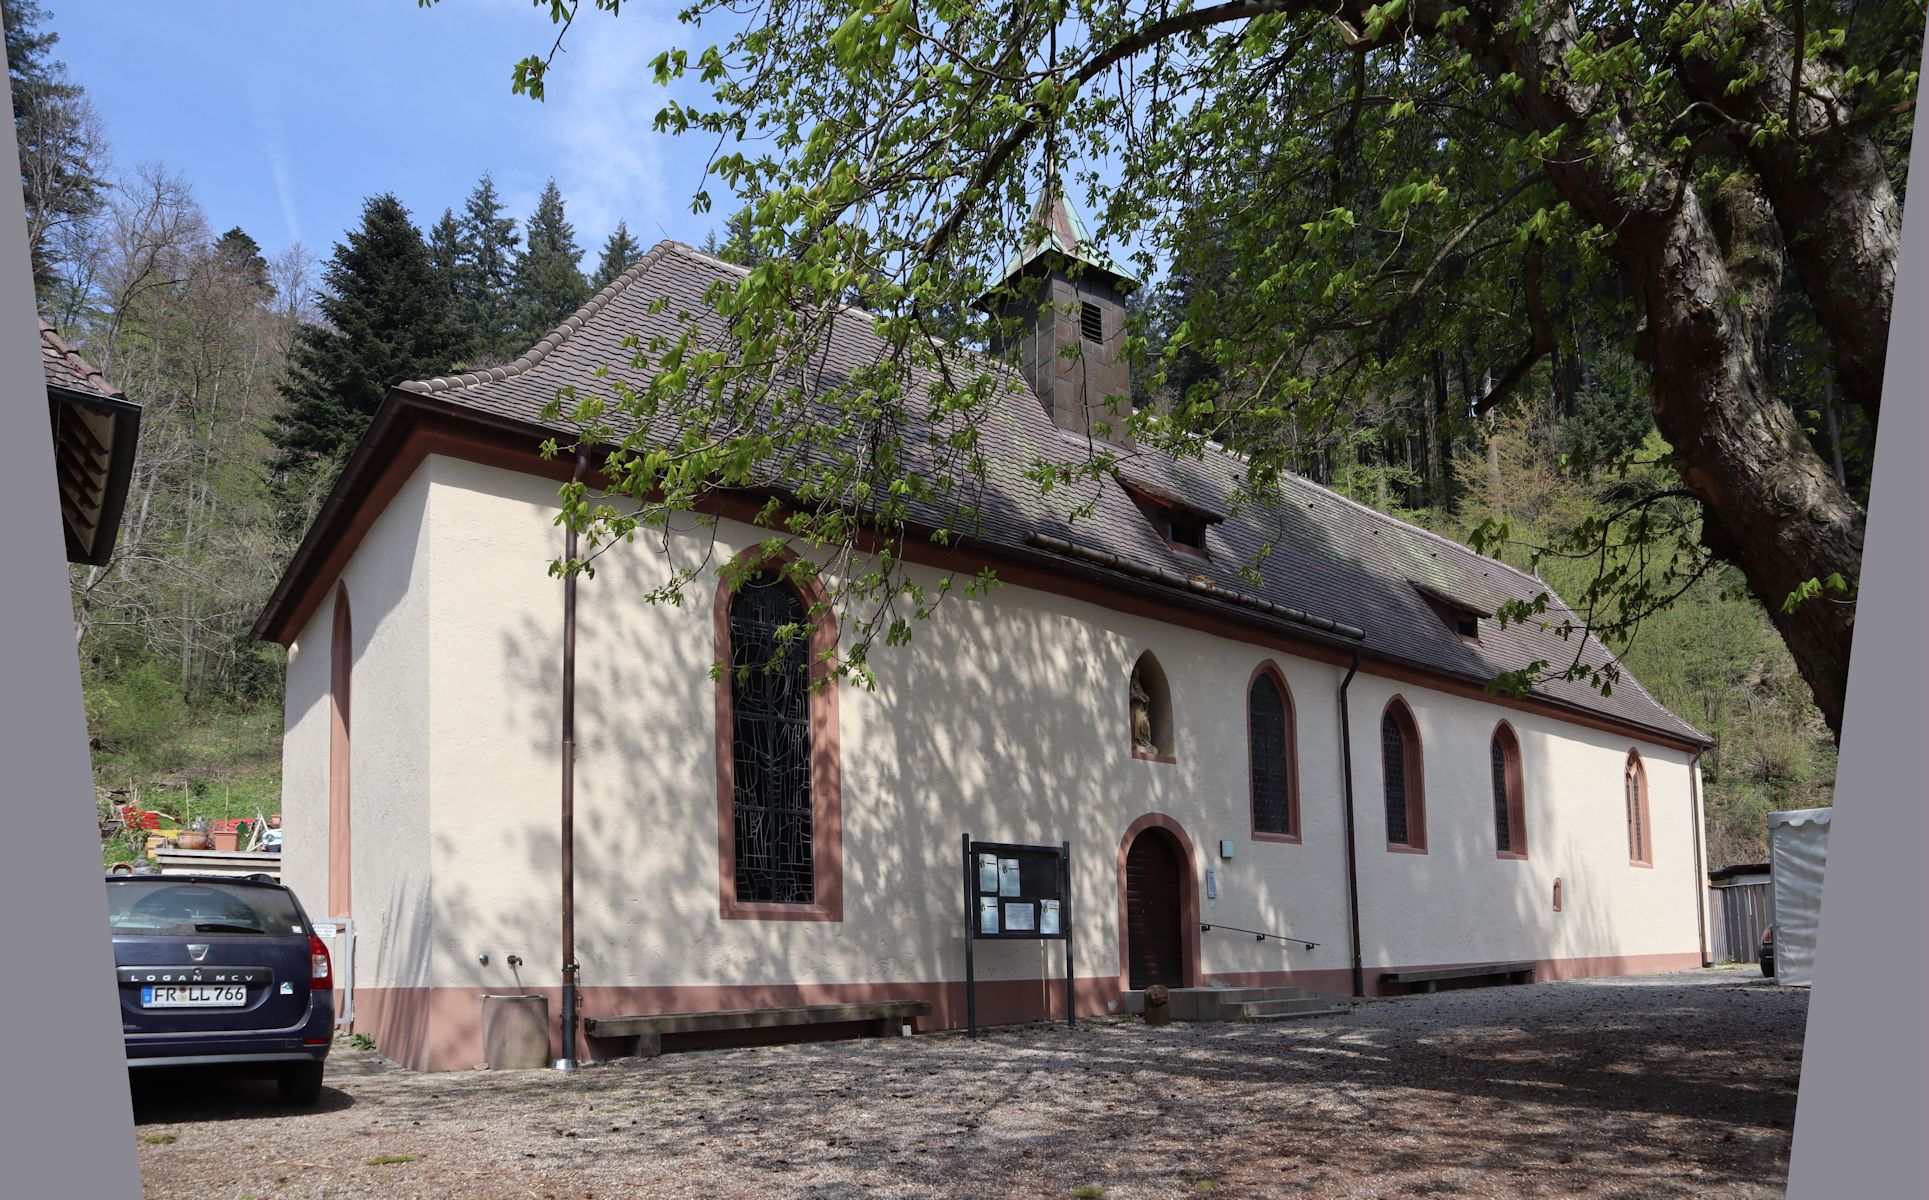 Kapelle St. Ottilien bei Freiburg im Breisgau